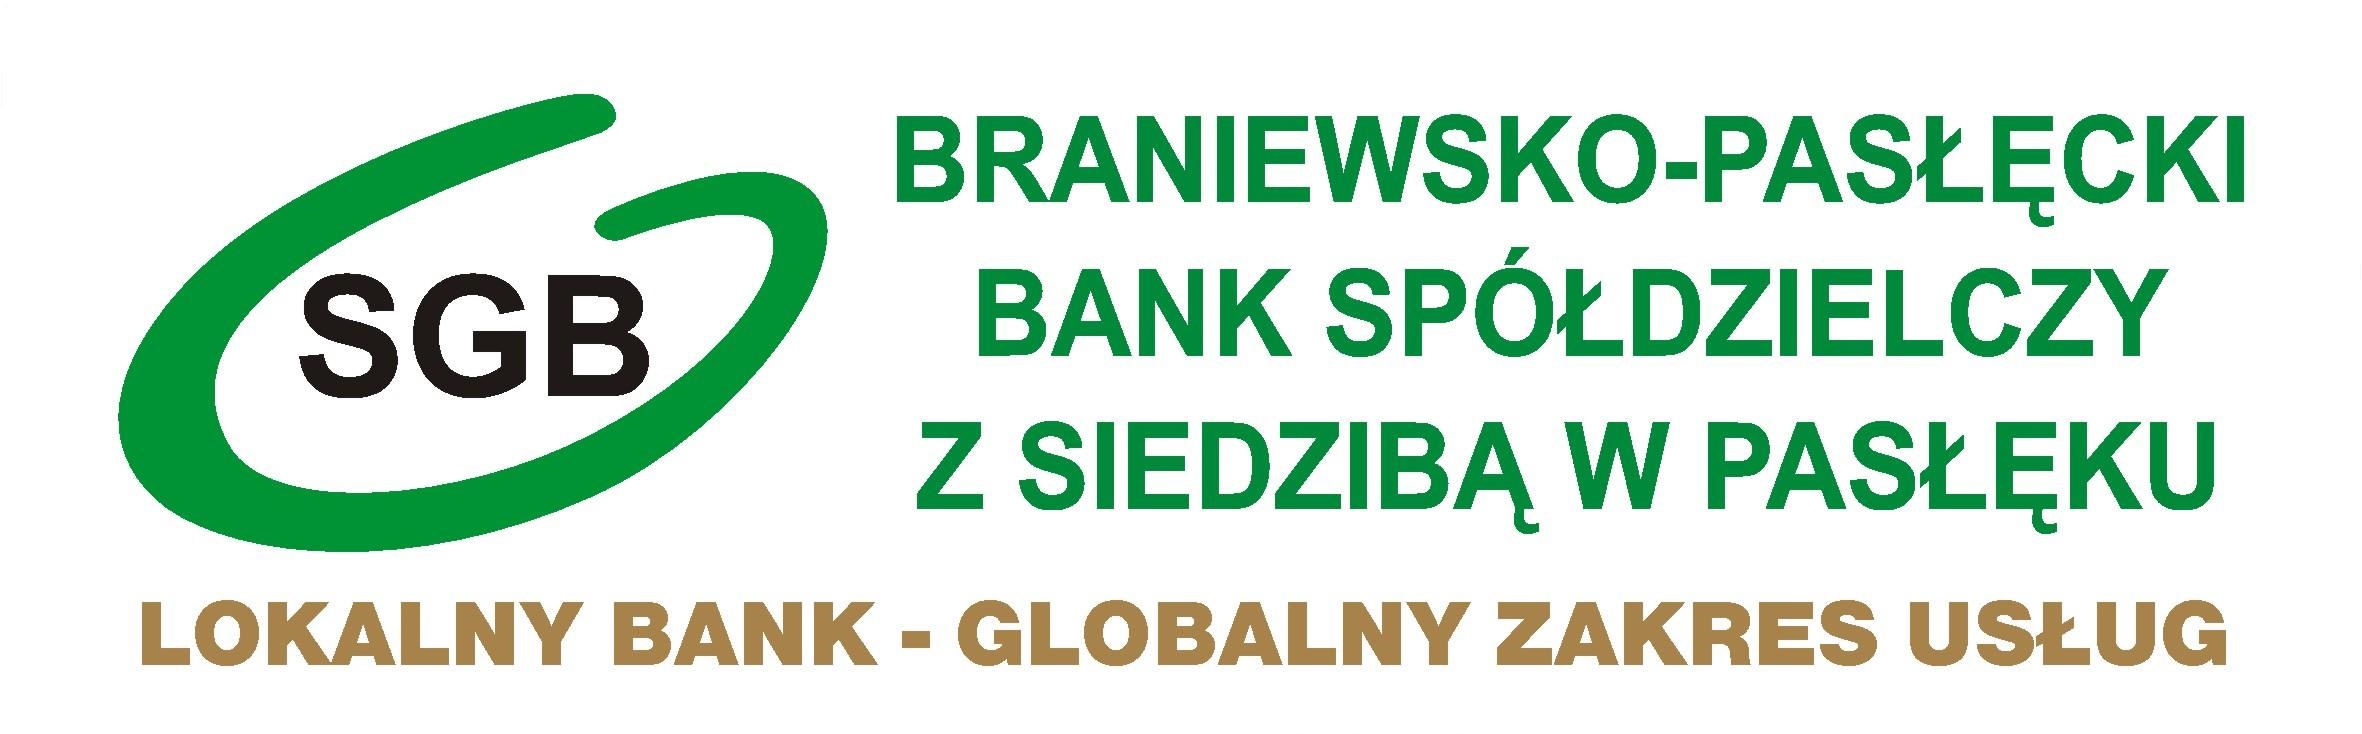 Strona główna - Braniewsko-Pasłęcki Bank Spółdzielczy z siedzibą w Pasłęku